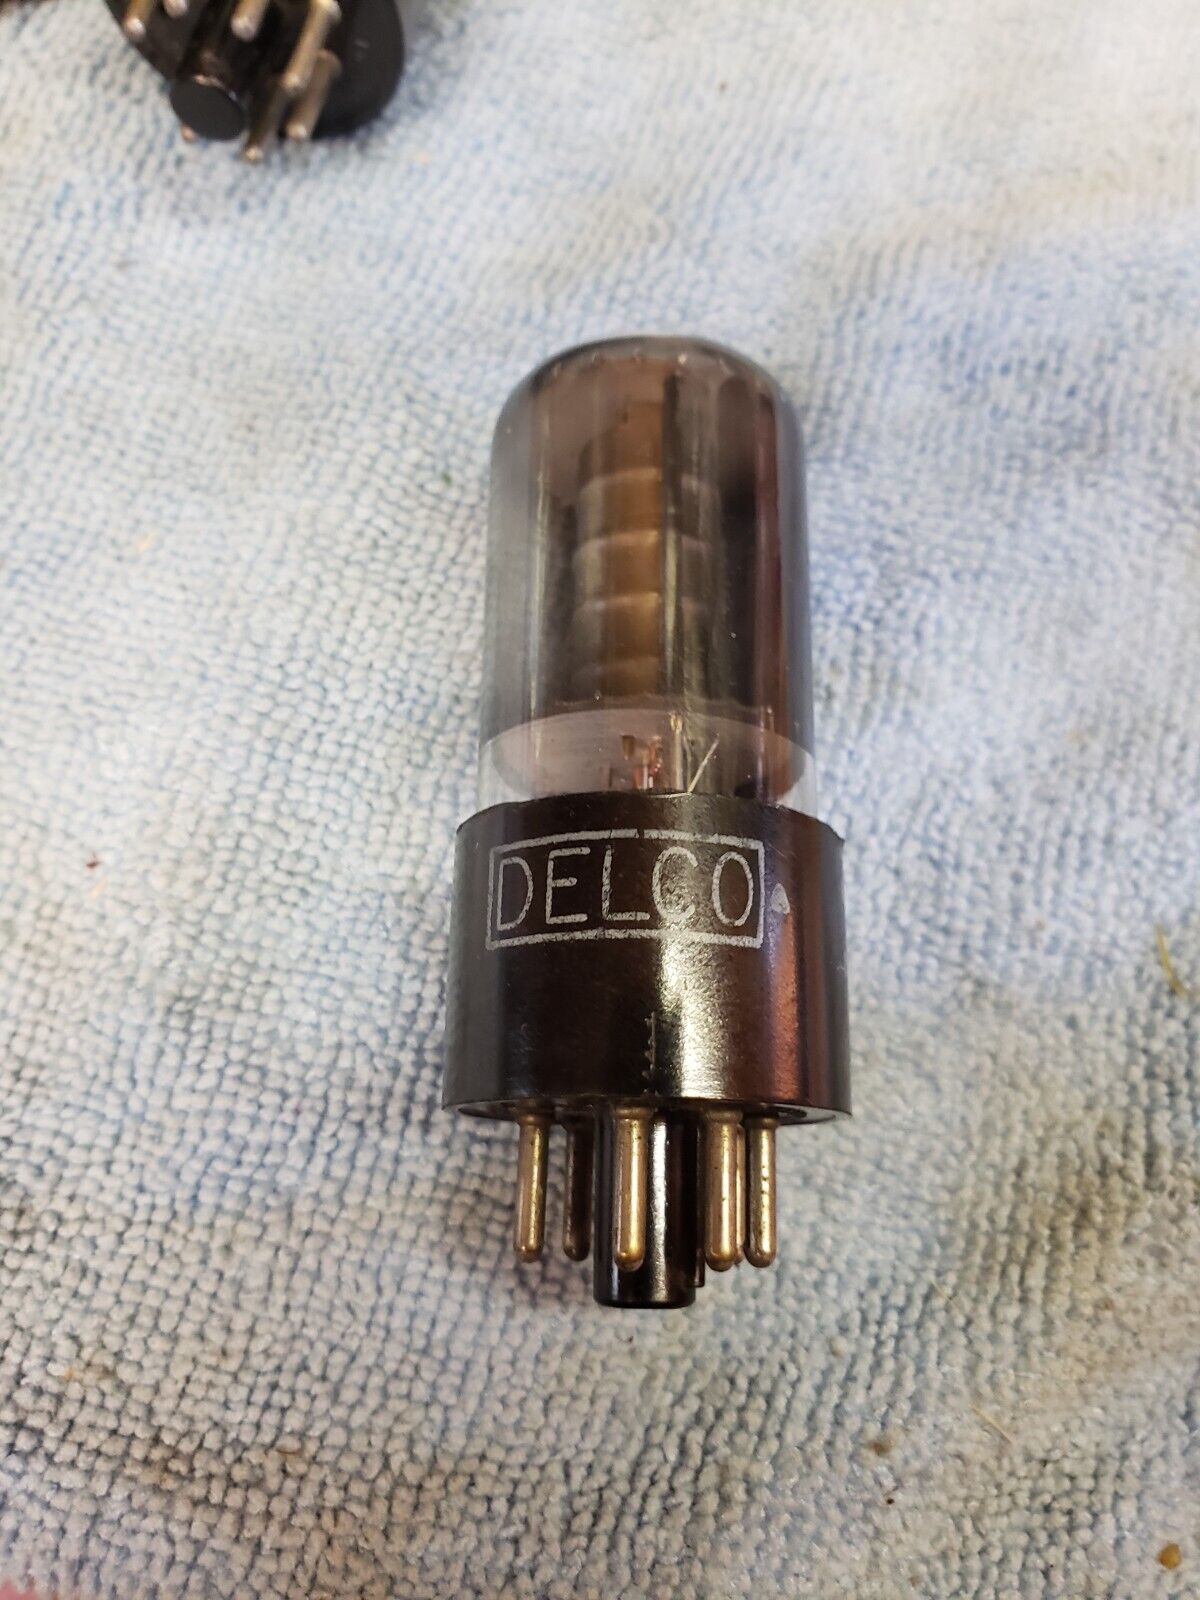 Single 6P6S / 6V6GT vacuum tube = 1940s Delco vintage rare 